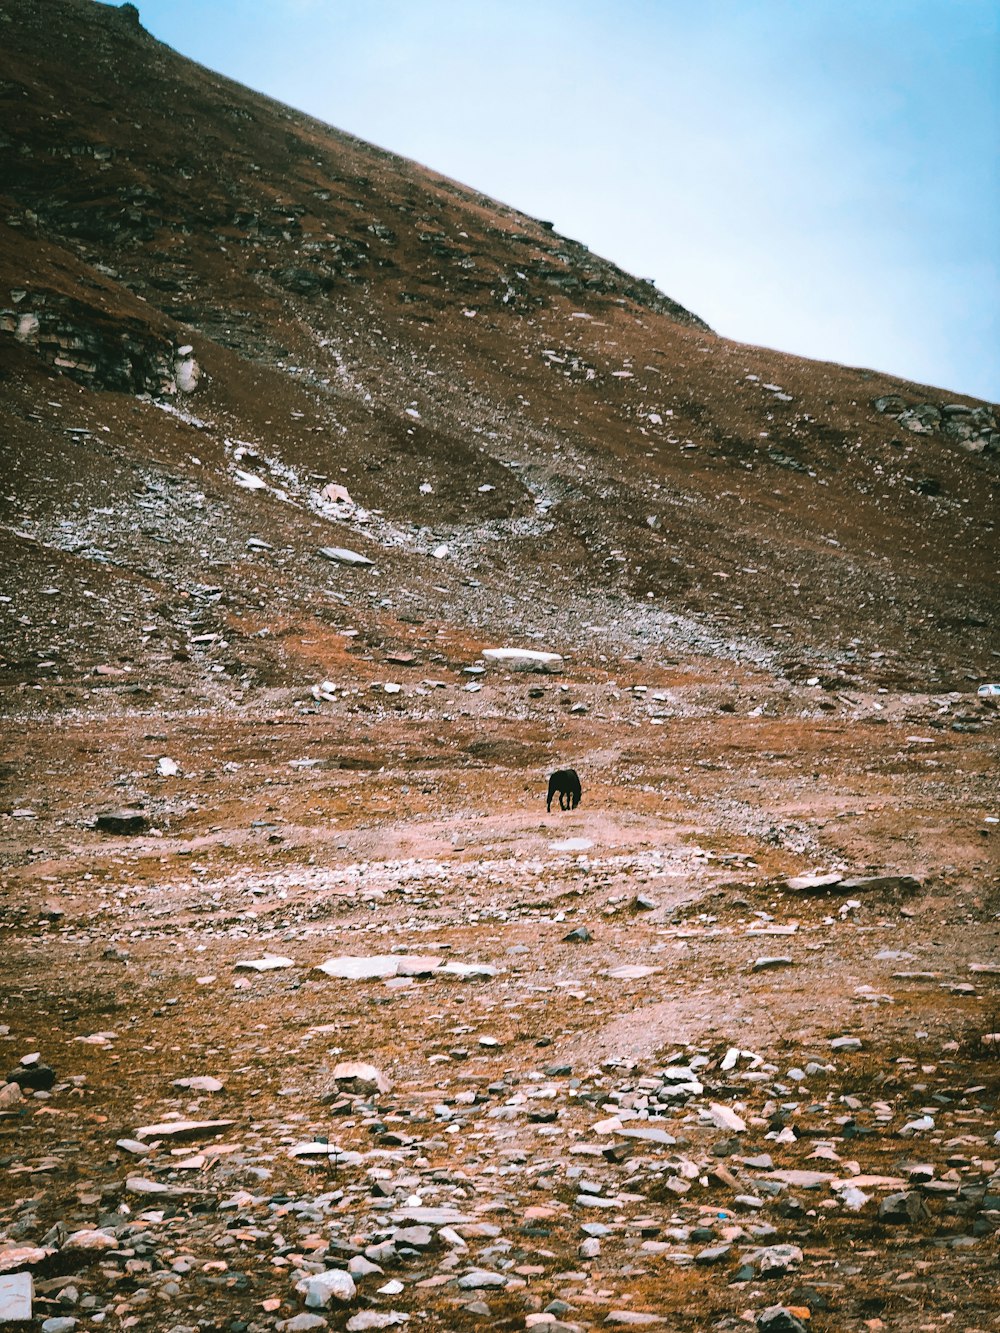 a bear walking on a rocky hill